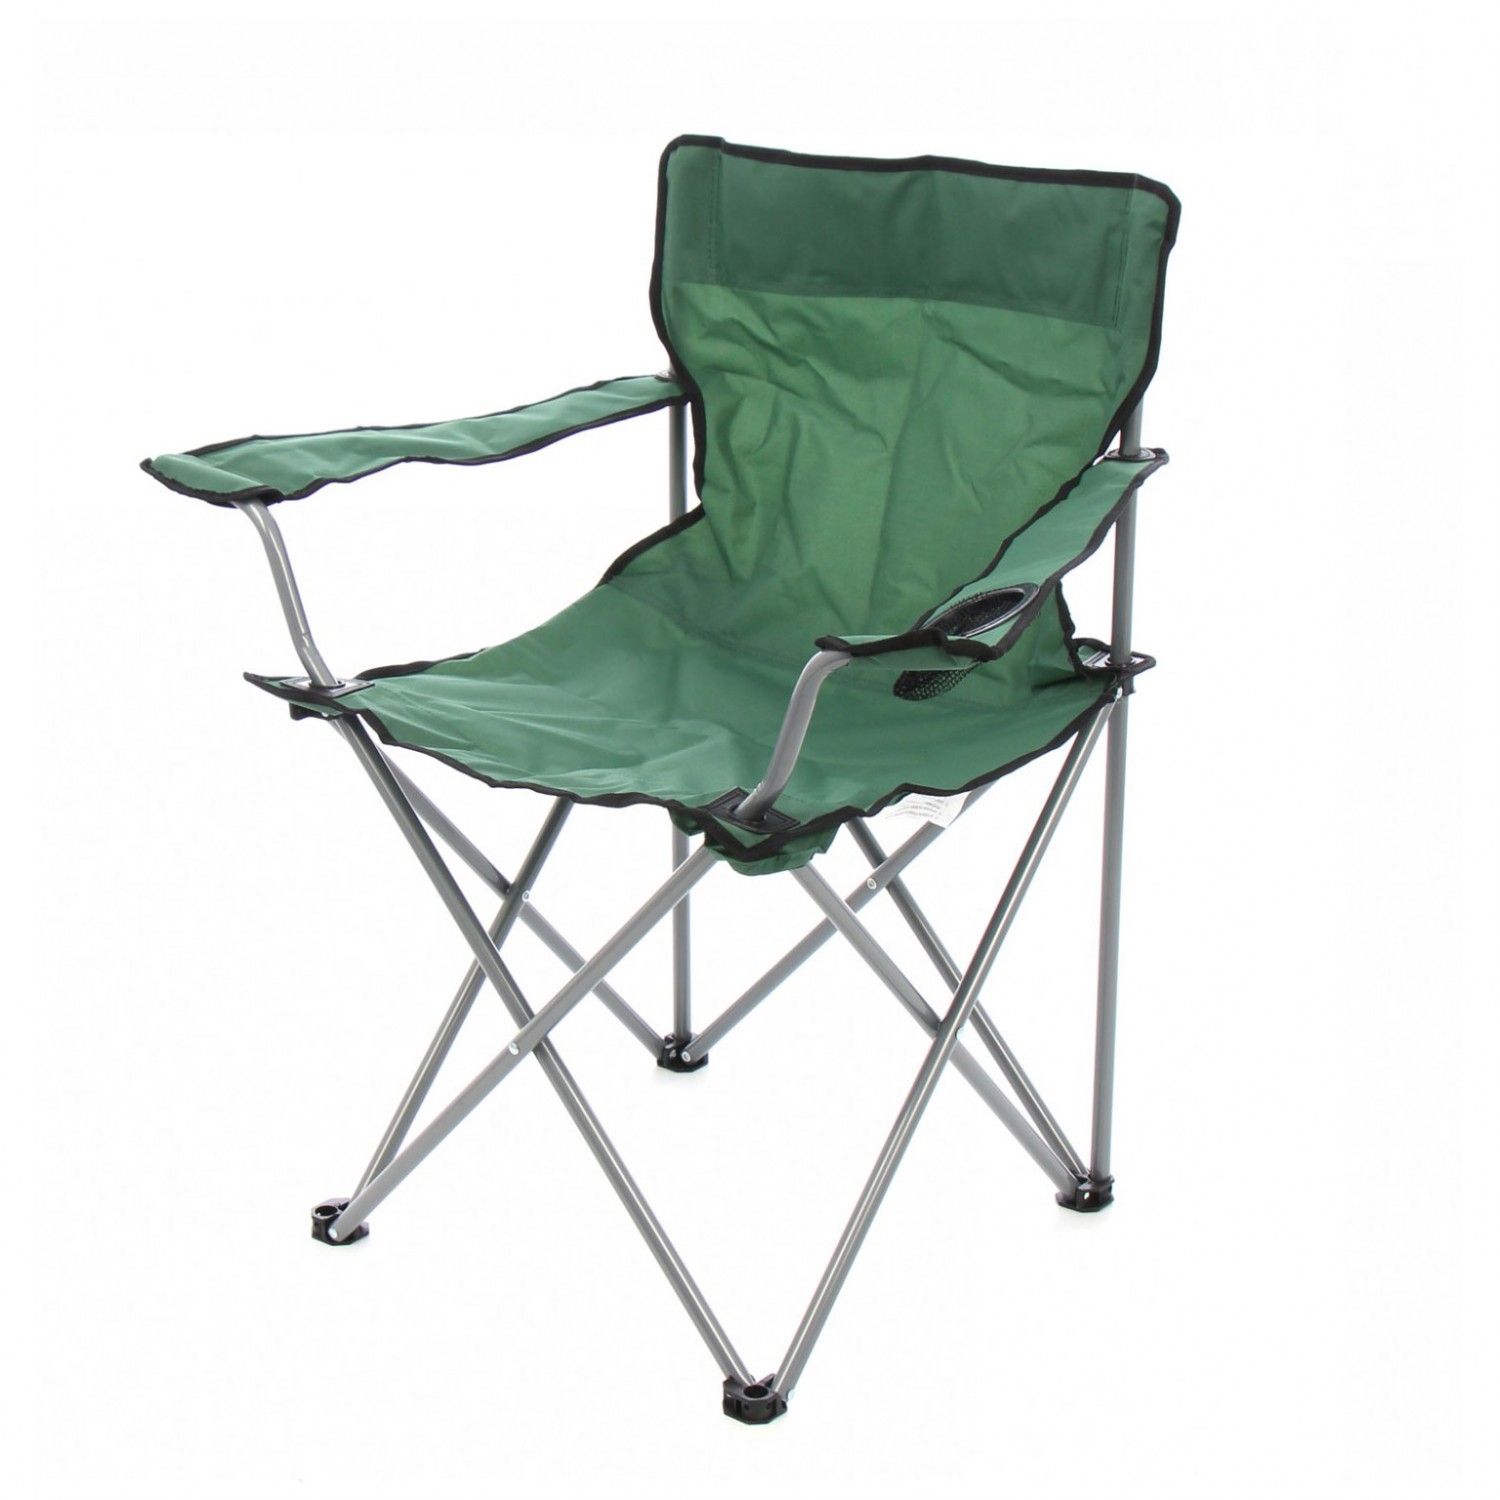 Scaun camping pliant IDL SummerTime Green Hornet , cu structura metalica , Culoare verde , Suport Pahar cu plasa , Dimensiuni 52 x 52 x 80 cm ,